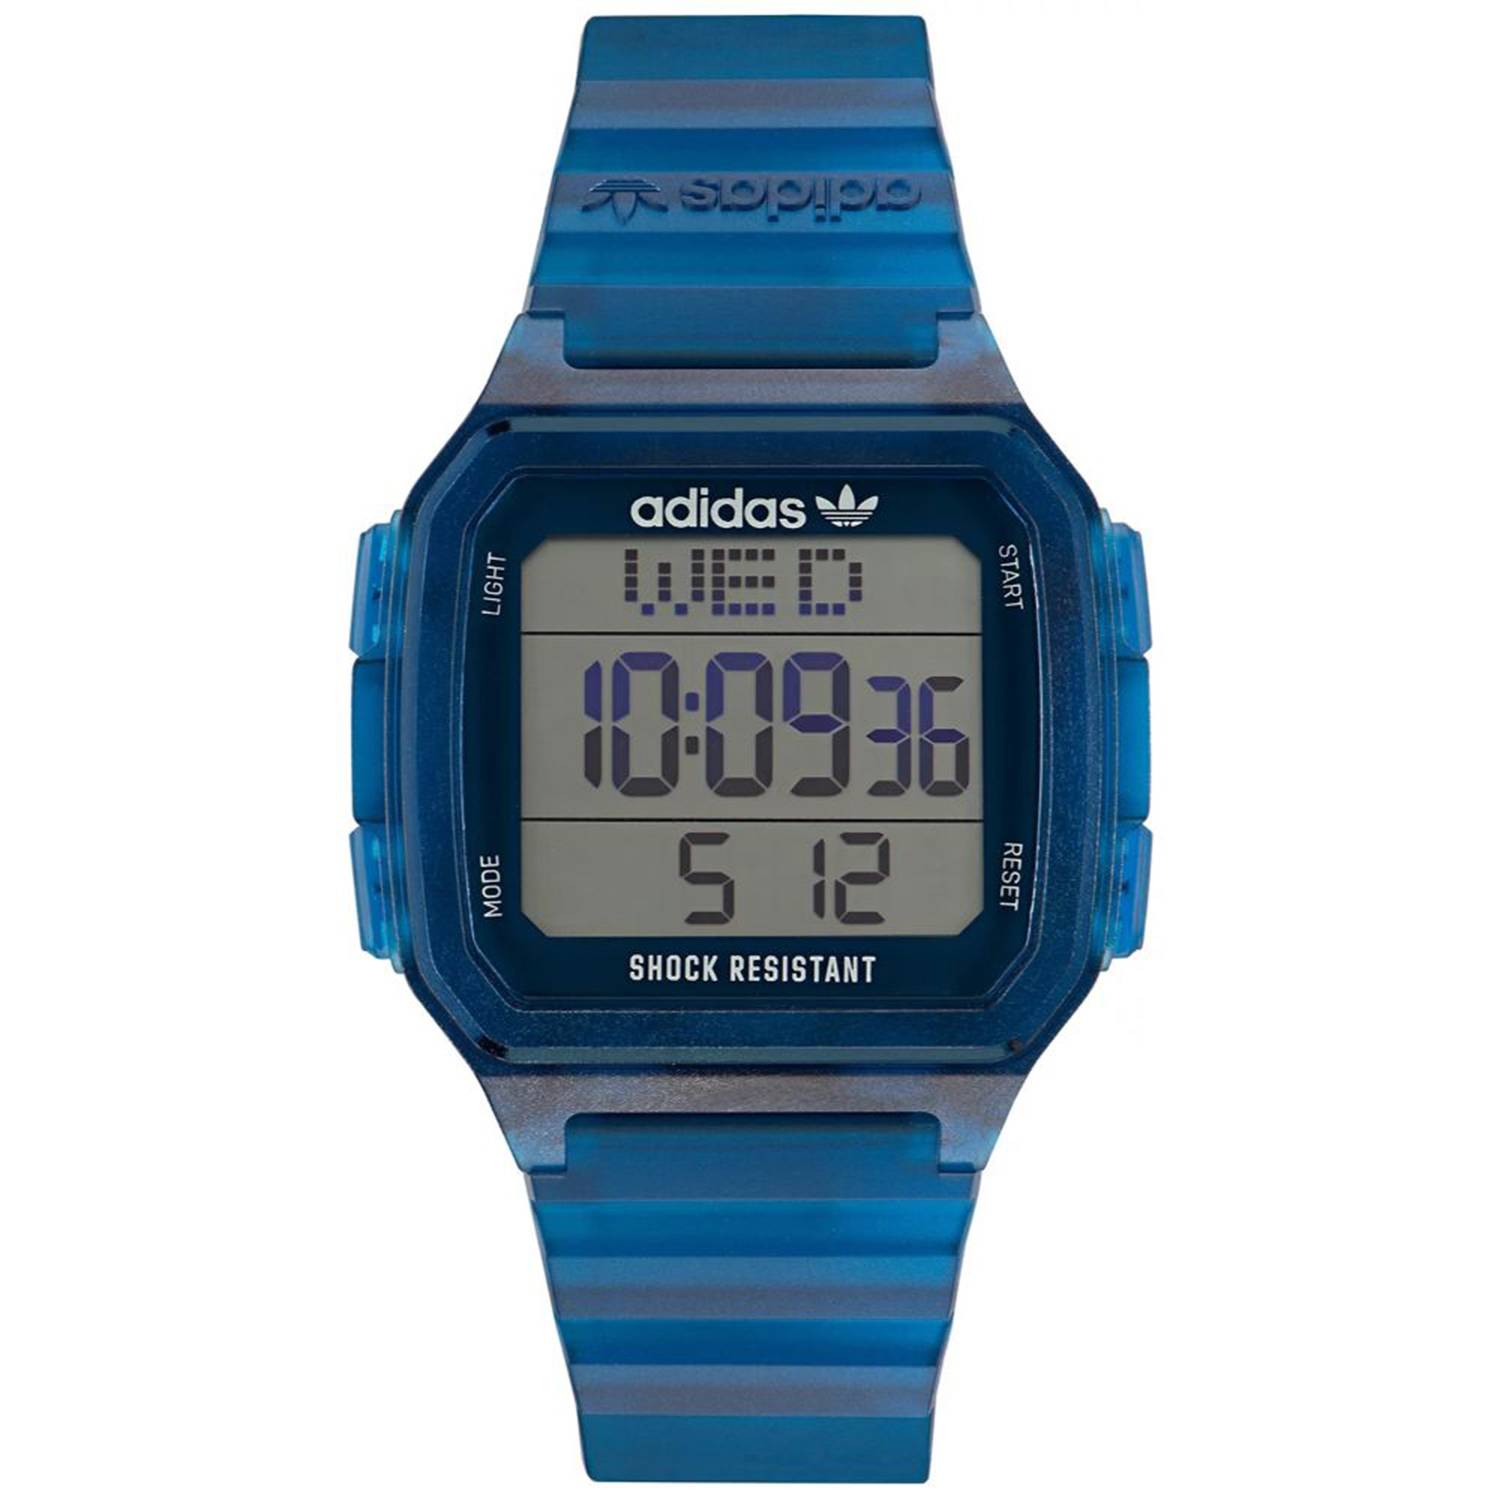 Acuoso Donación casual Reloj Unisex Adidas Digital One GMT ADIDAS | falabella.com